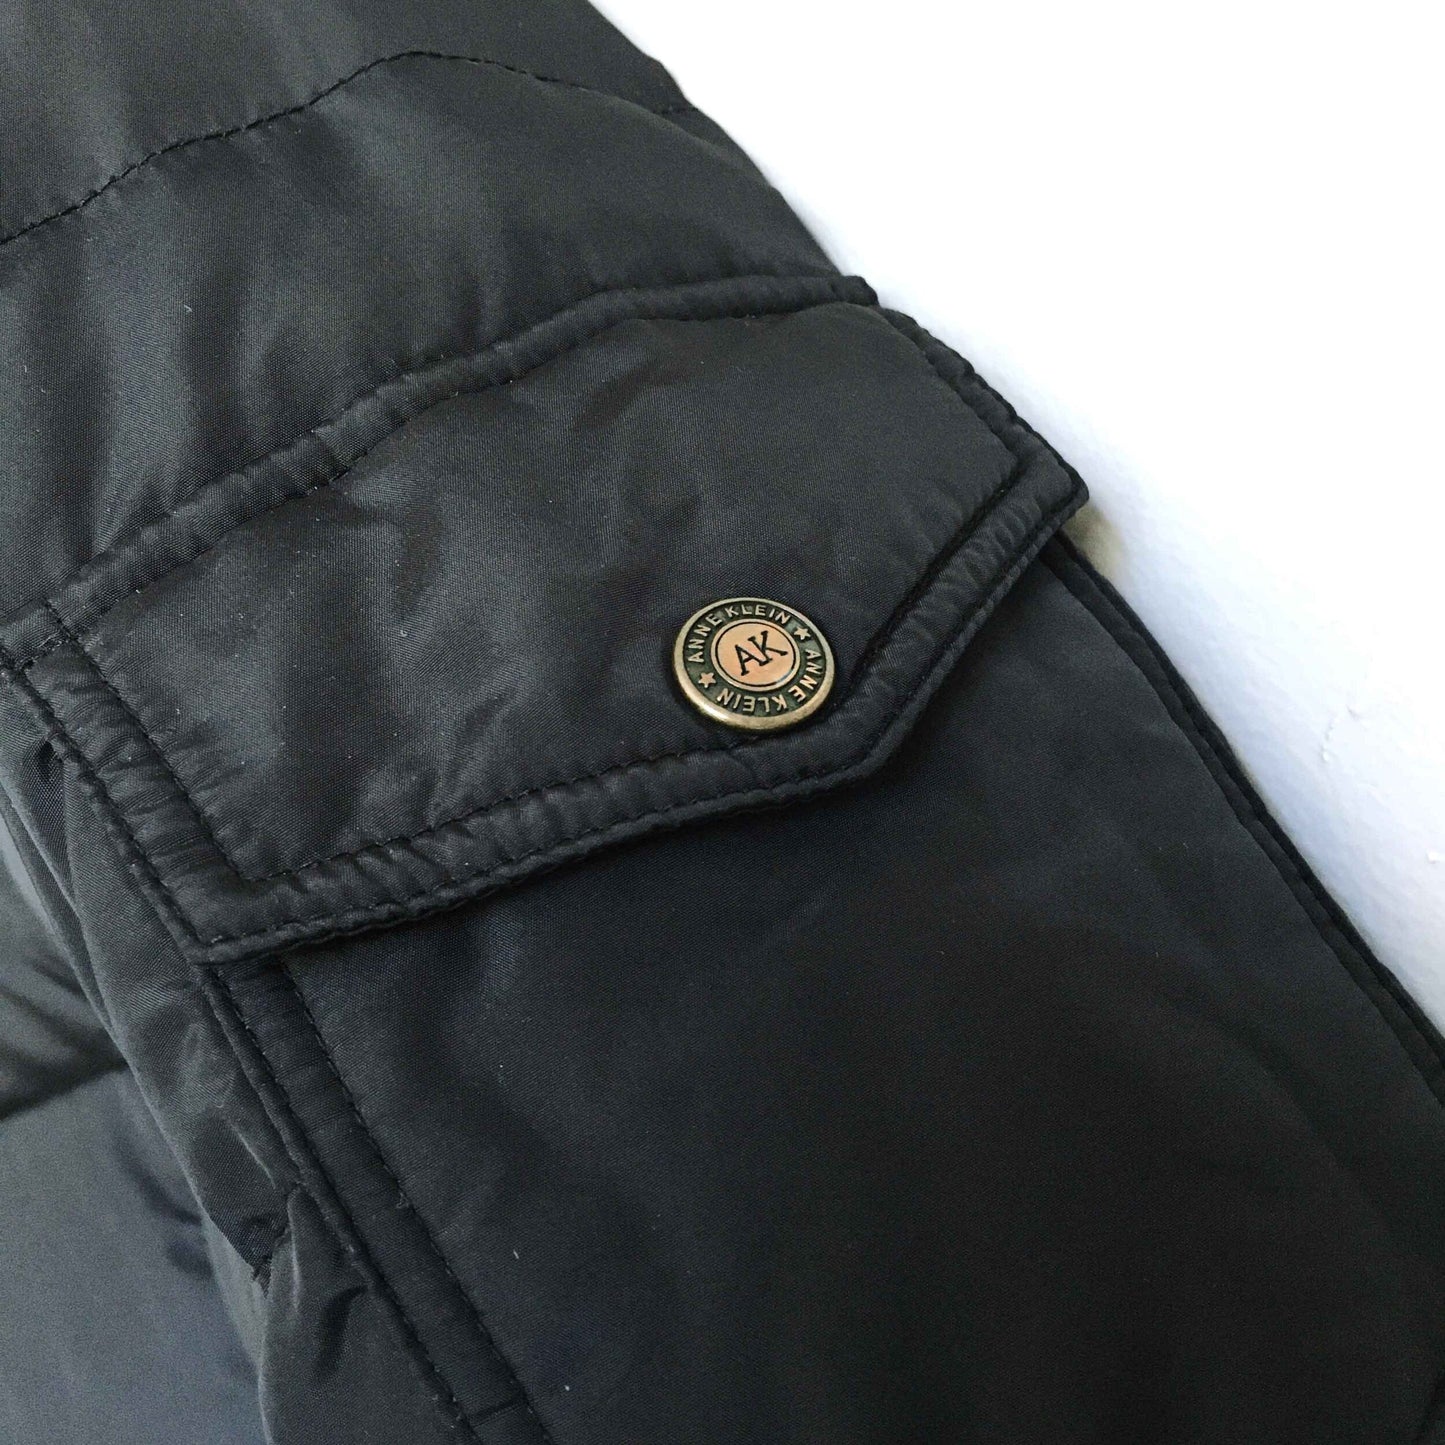 anne klein down fill puffer jacket - size medium